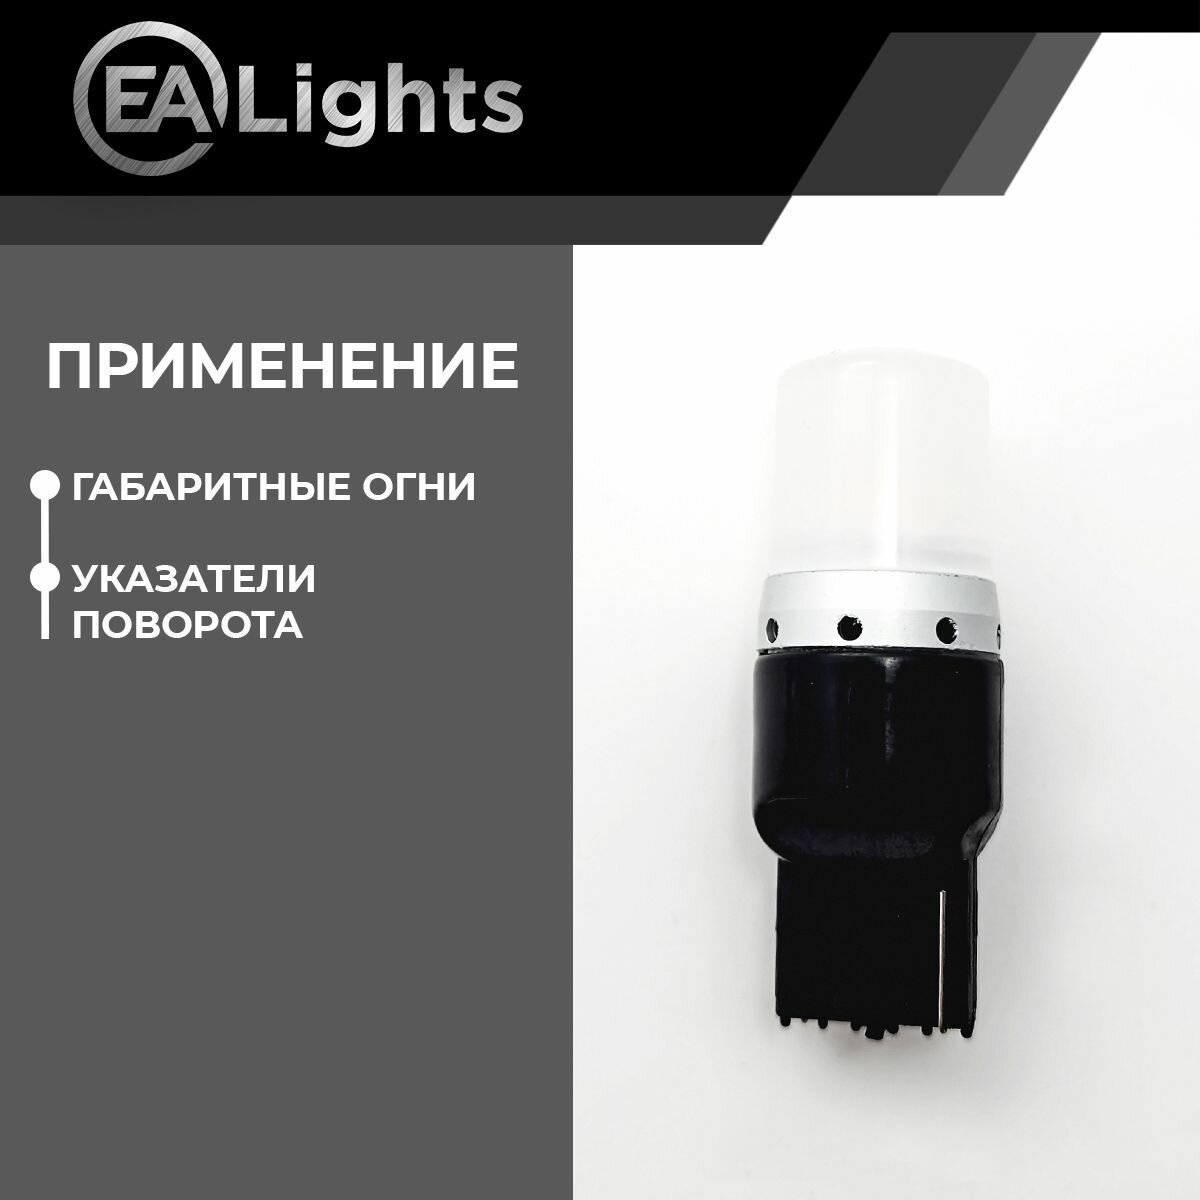 Автомобильная светодиодная LED лампа T20 WY21W (чип 2835-9) для указателей поворота, 12в желтый свет, 2 шт